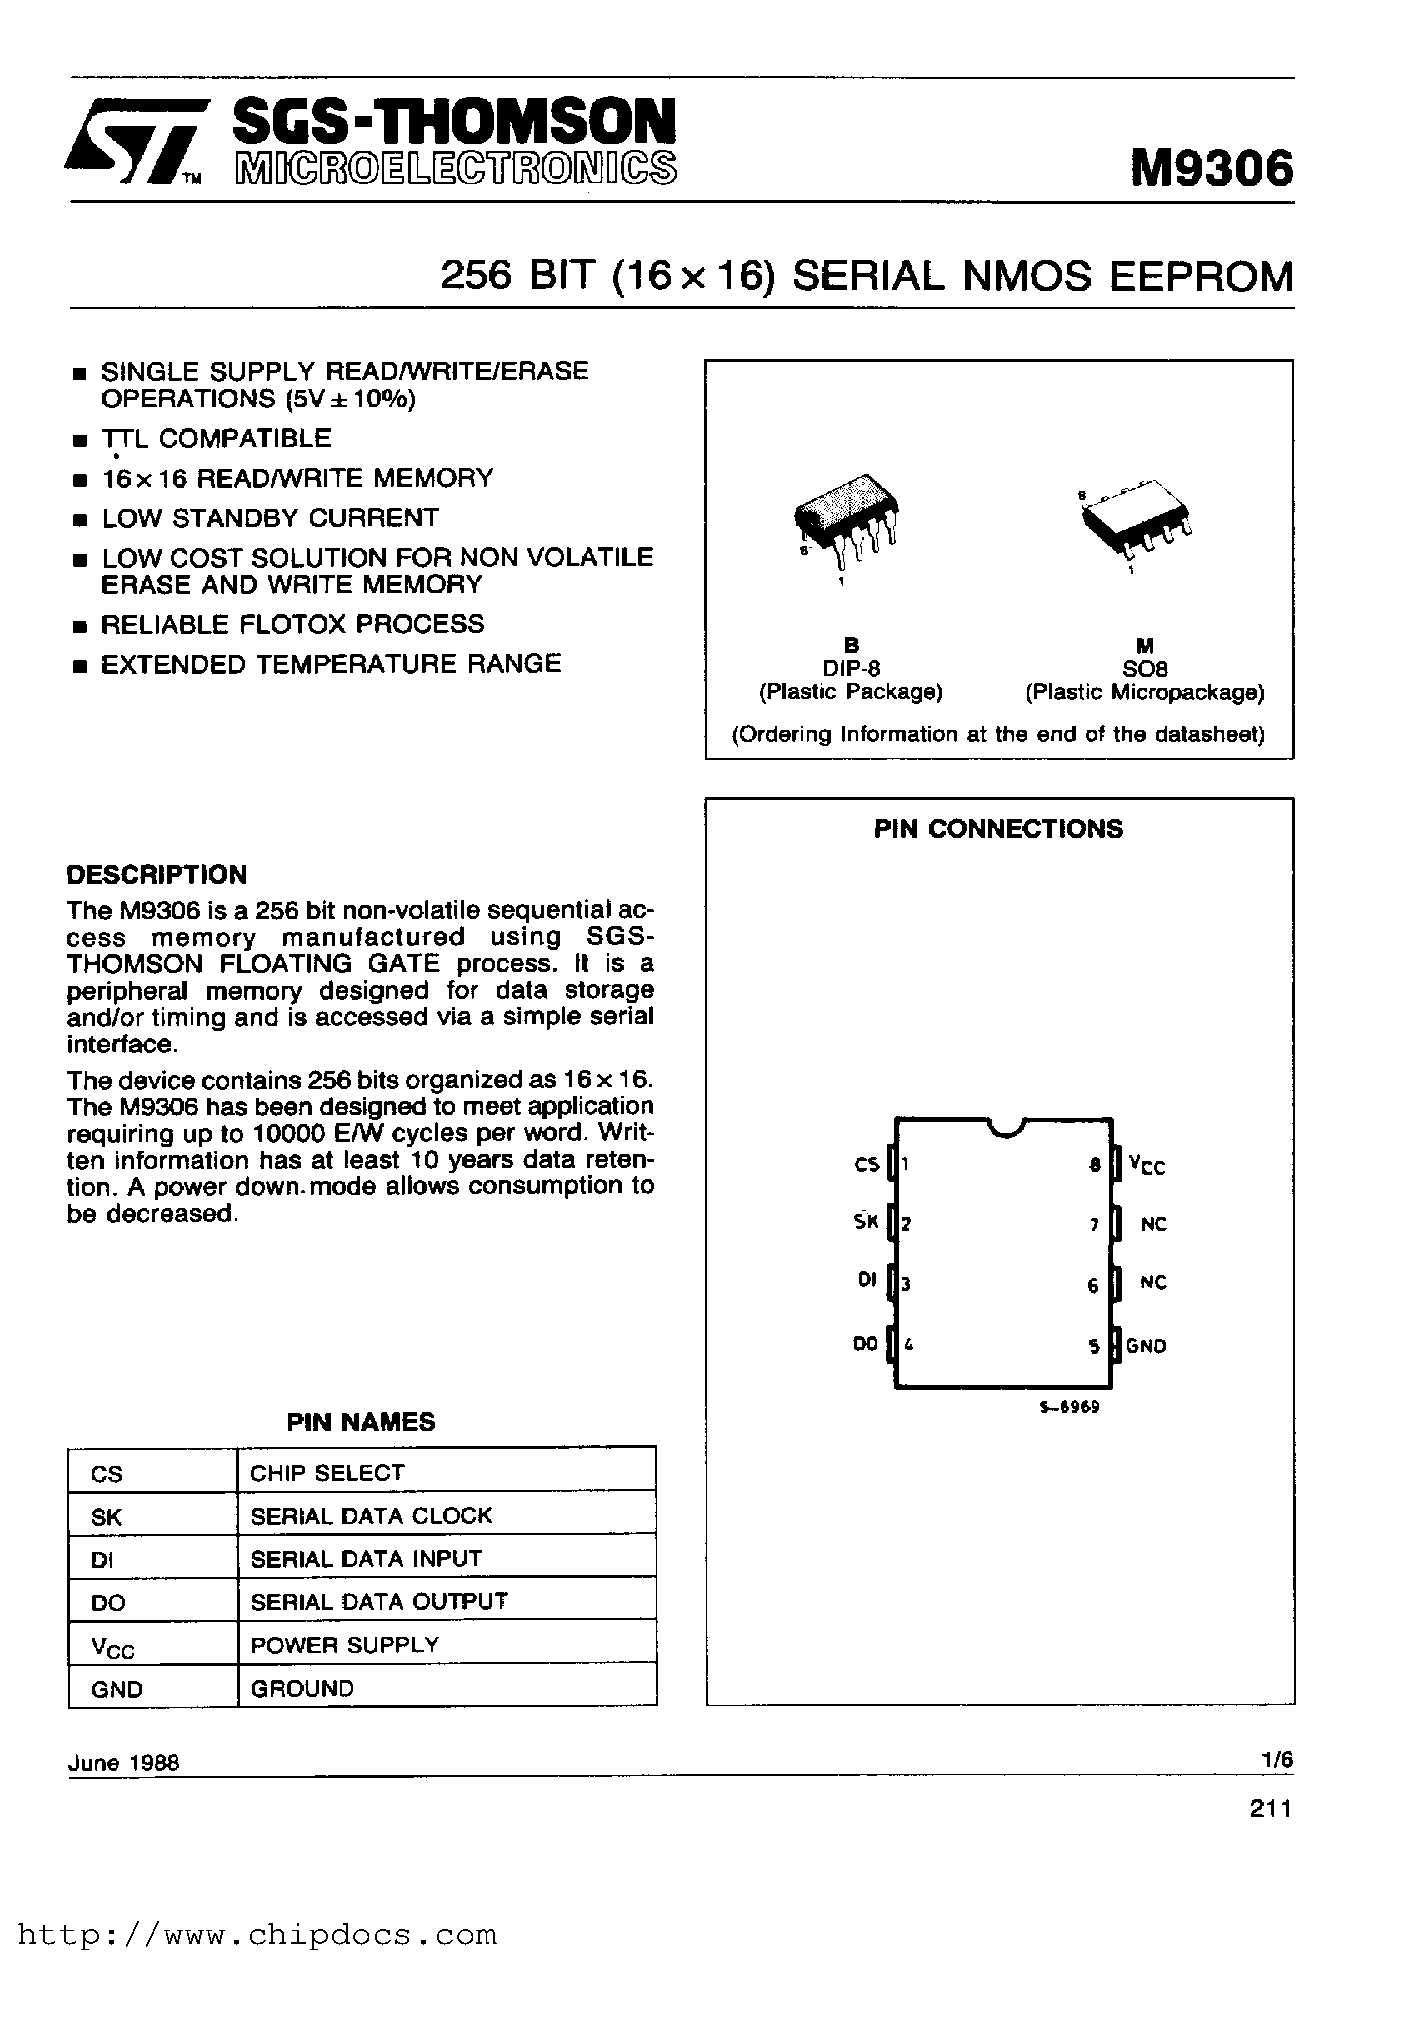 Datasheet M9306 - 256BIT (16X16) SERIAL NMOS EEPROM page 1